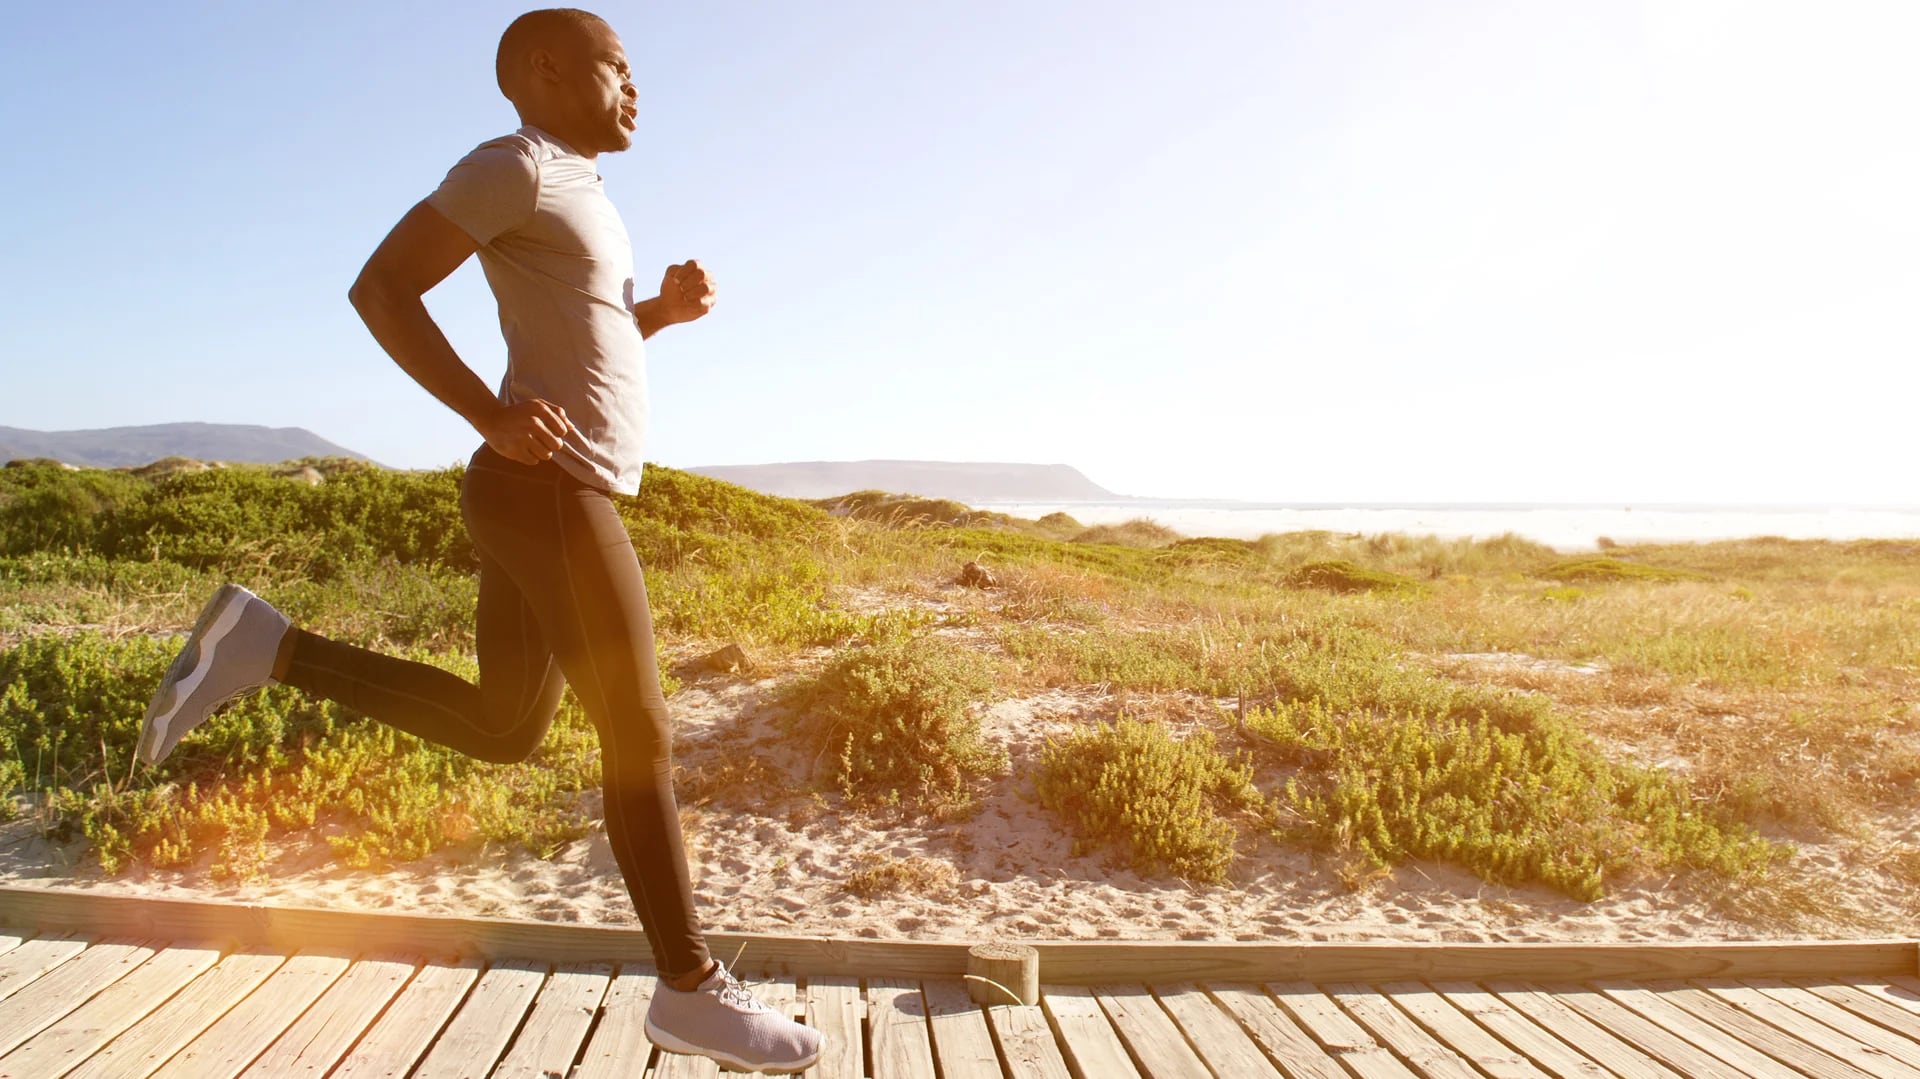 Correr es uno de los deportes más efectivos para adelgazar, lo que sirve para que la capacidad física mejore (iStock)